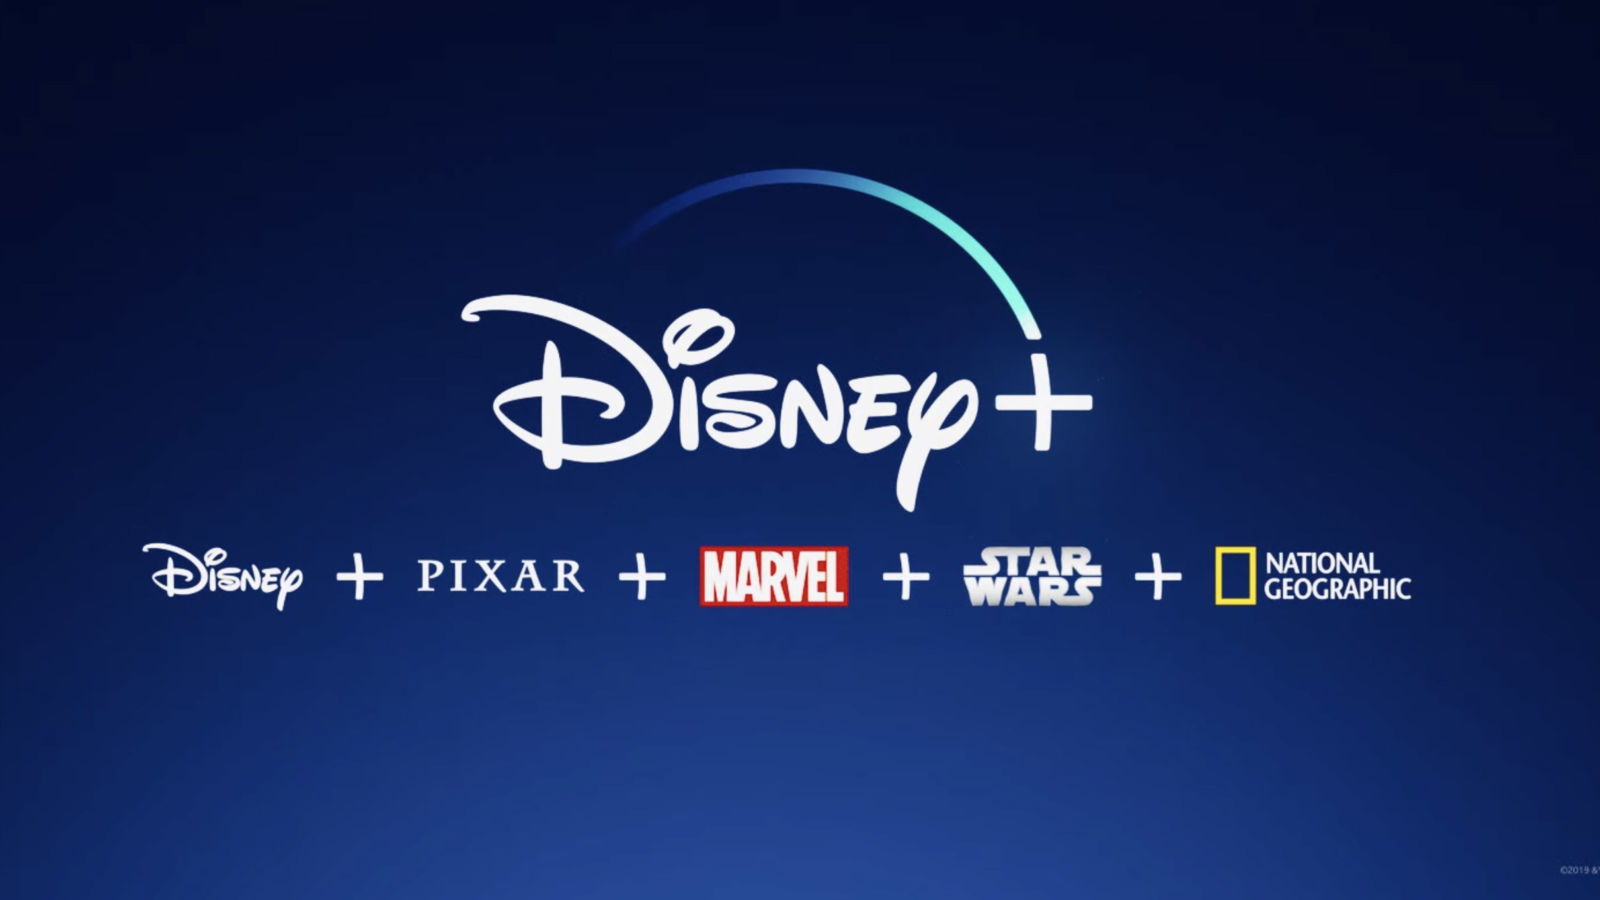 Disney + превышает 50 миллионов подписчиков всего за пять месяцев 38